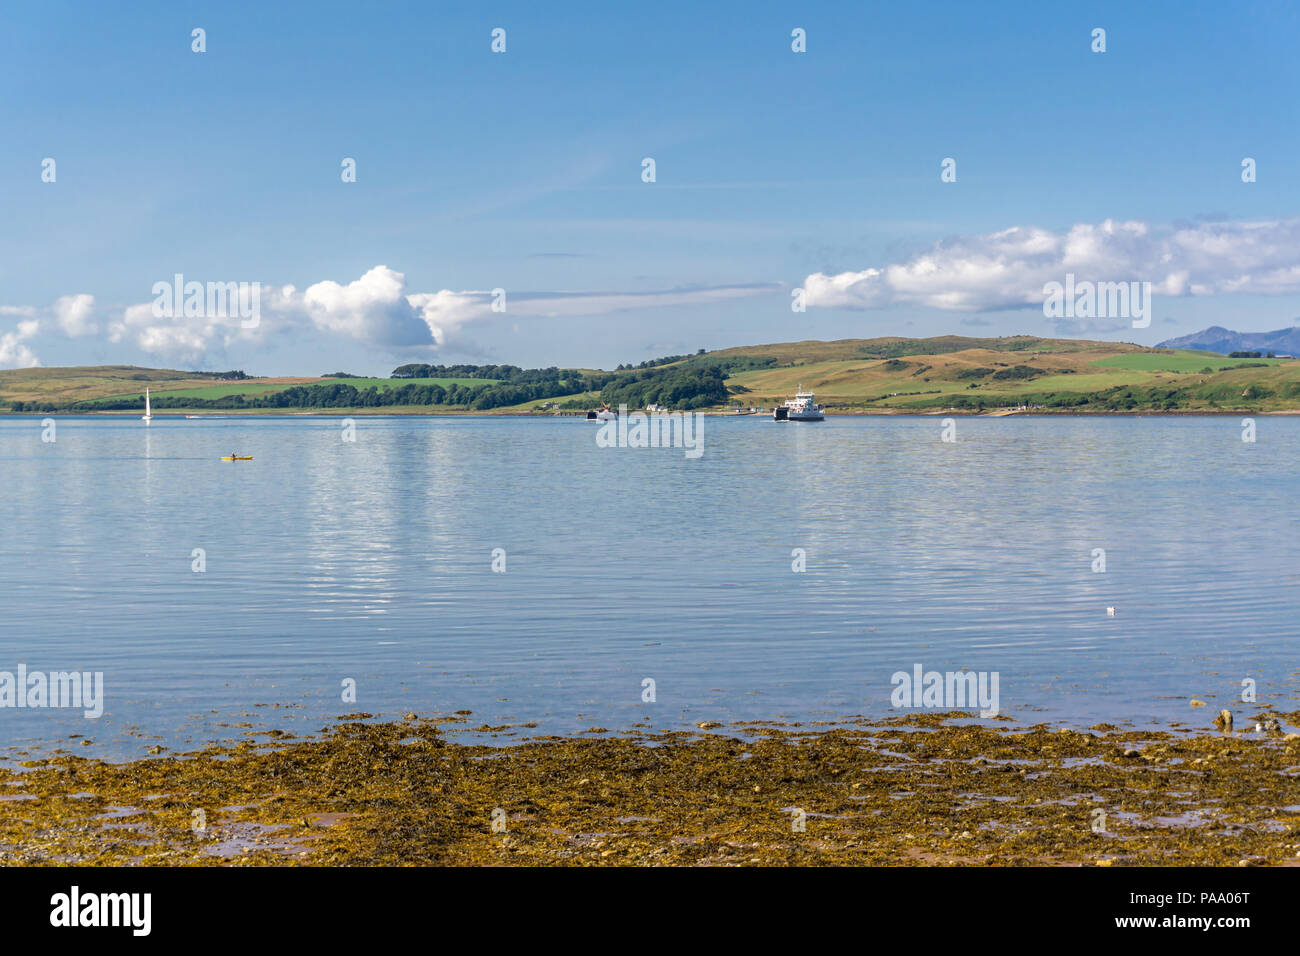 Bild der Insel Cumbrae gegenüber Largs an der Westküste von Schottland, die durch die zwei kleinen Fähren zur und von der Insel serviert wird. Imag Stockfoto